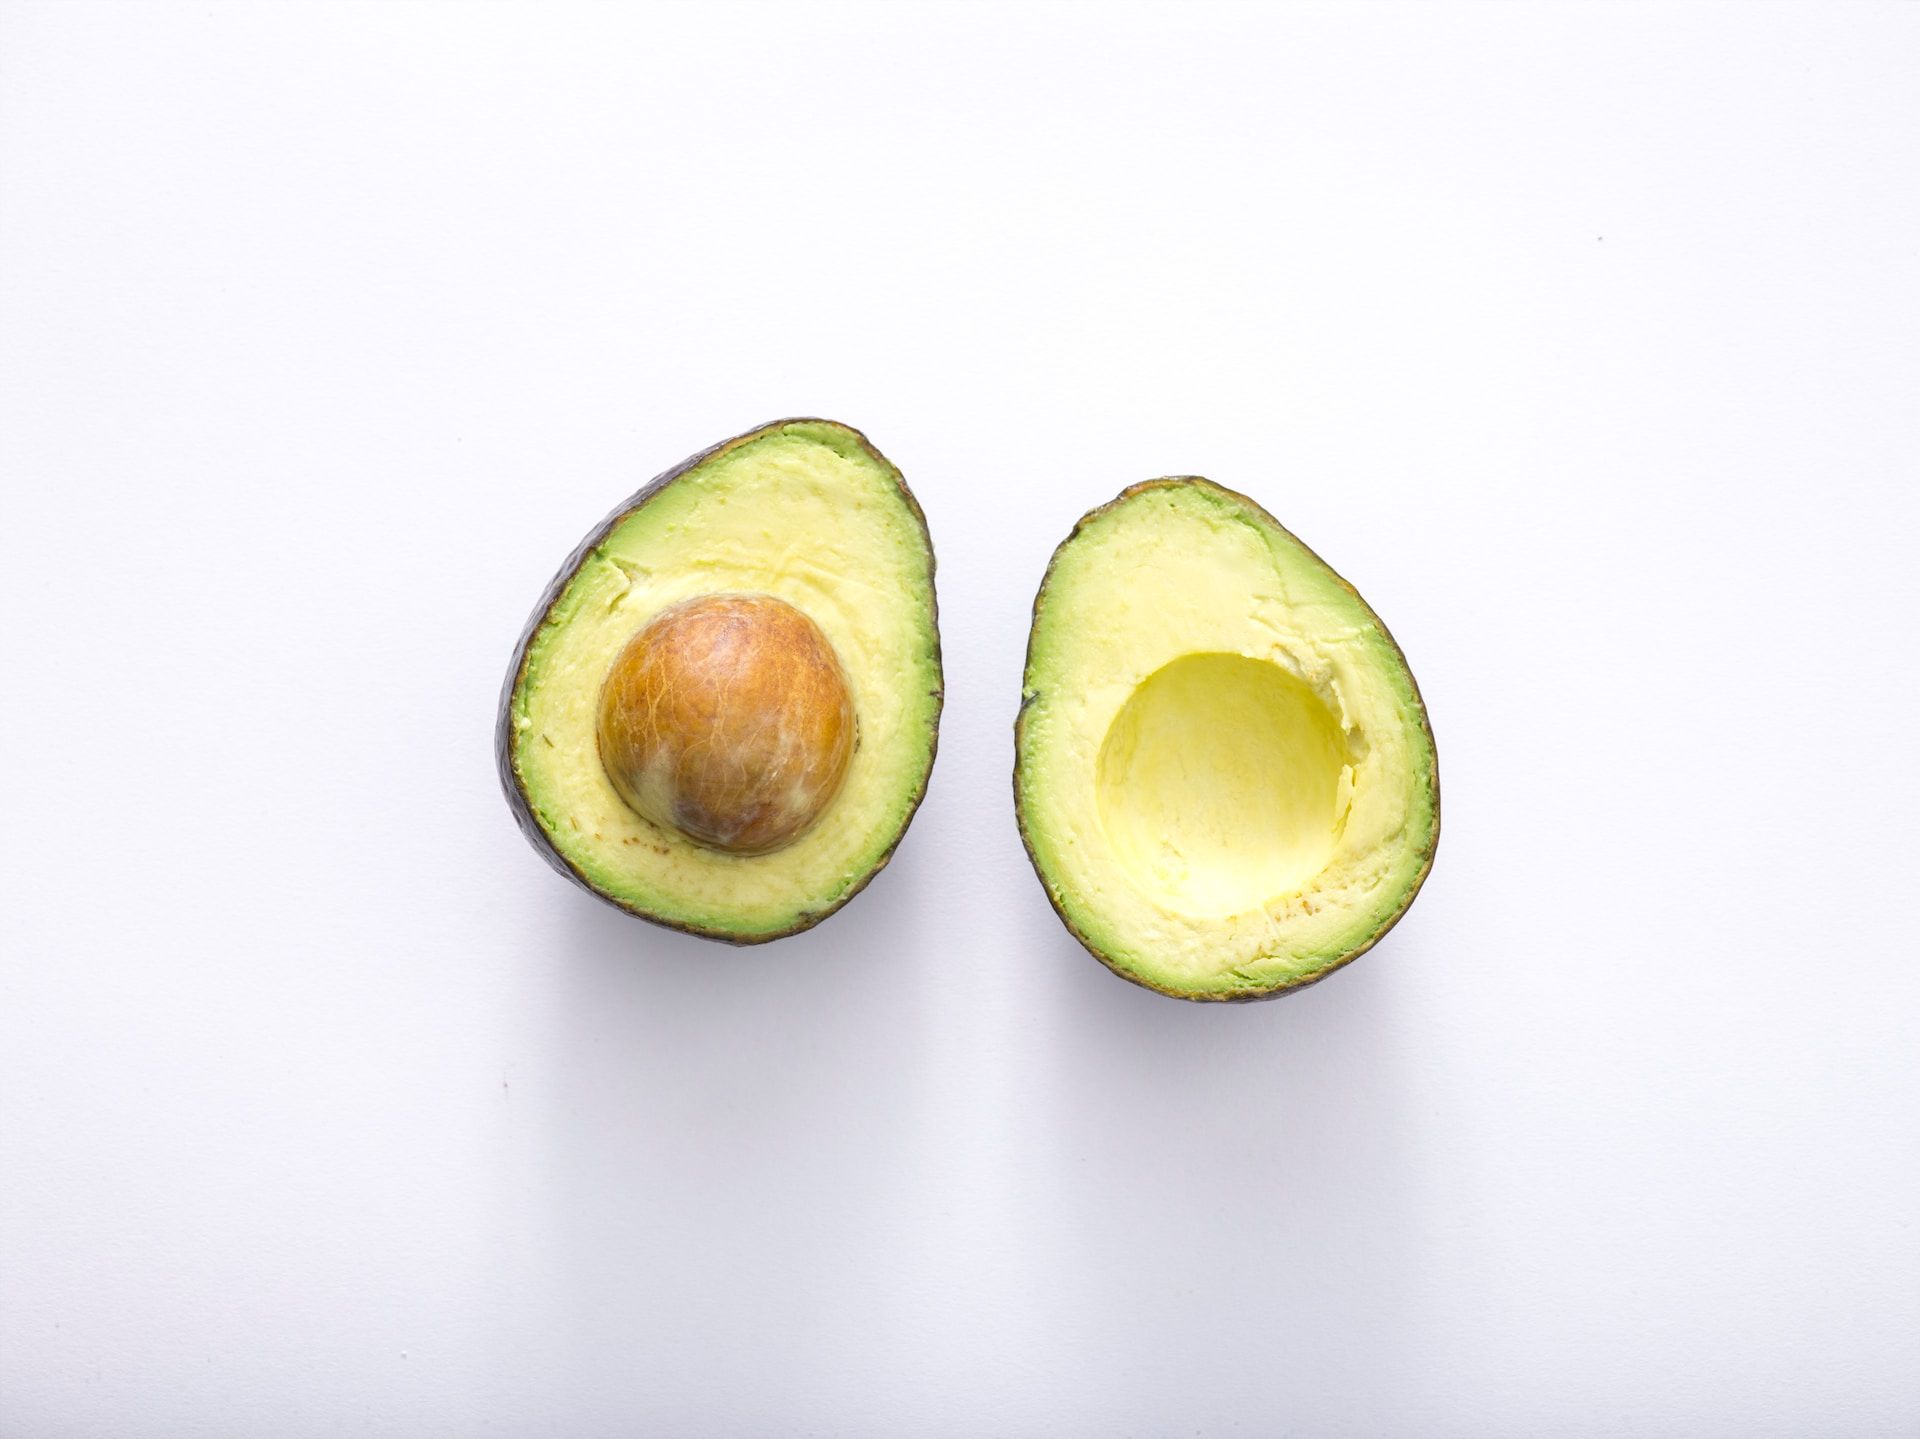 Кому нельзя авокадо: питательный плод может негативно влиять на здоровье - Здоровье 24